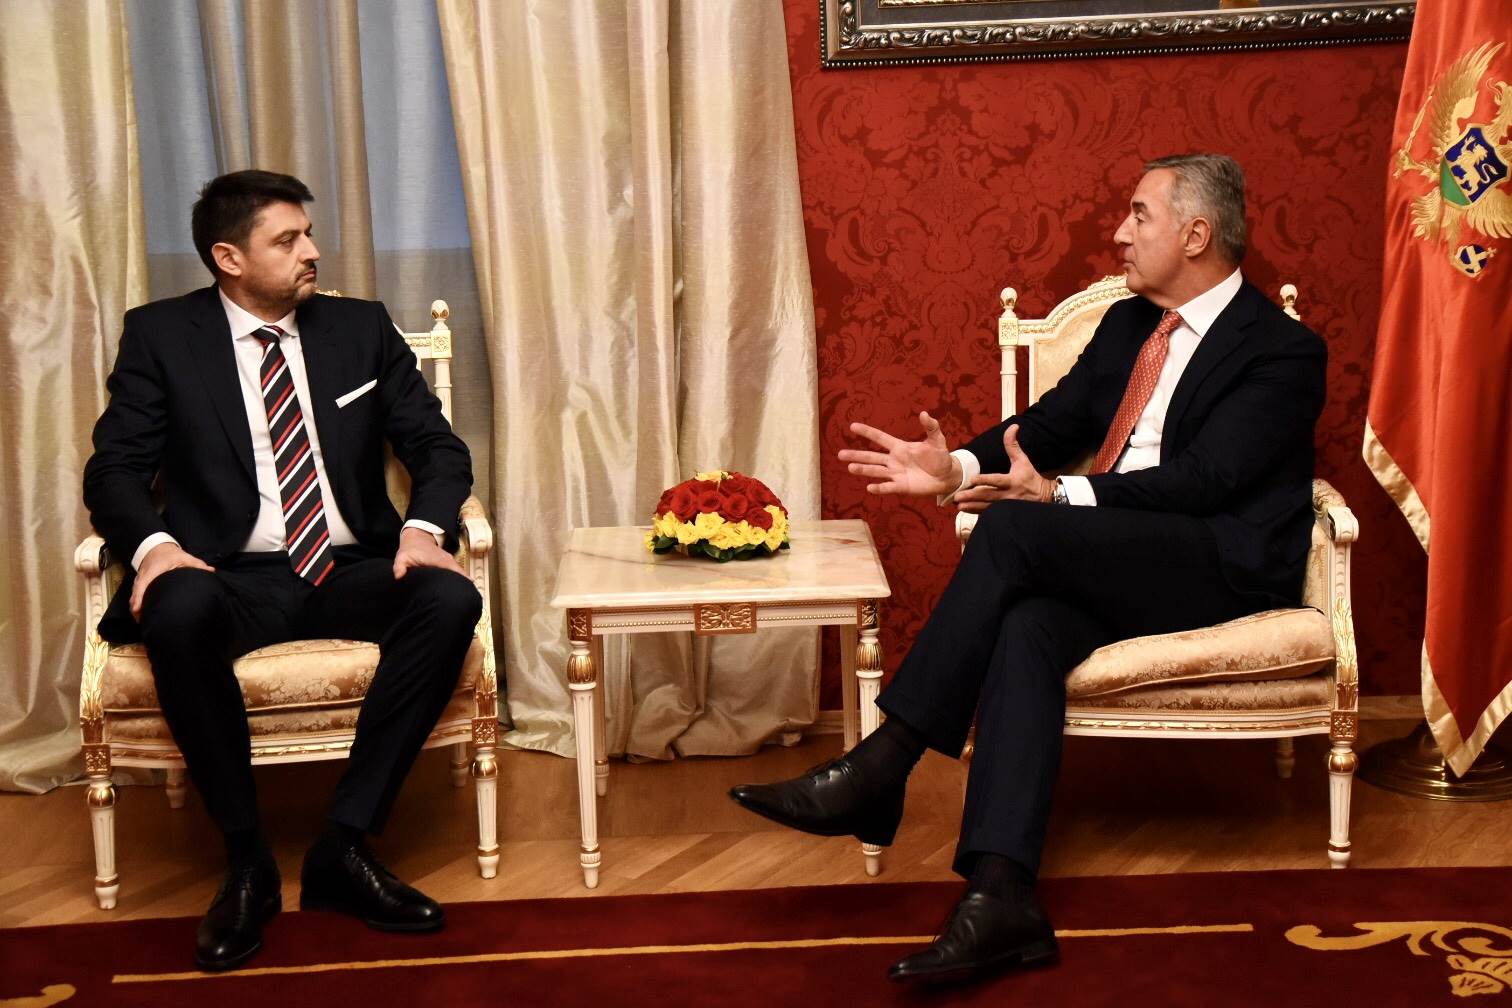  Đukanović sa ambasadorom Srbije: Razlike ne koristiti za pogoršanje odnosa 